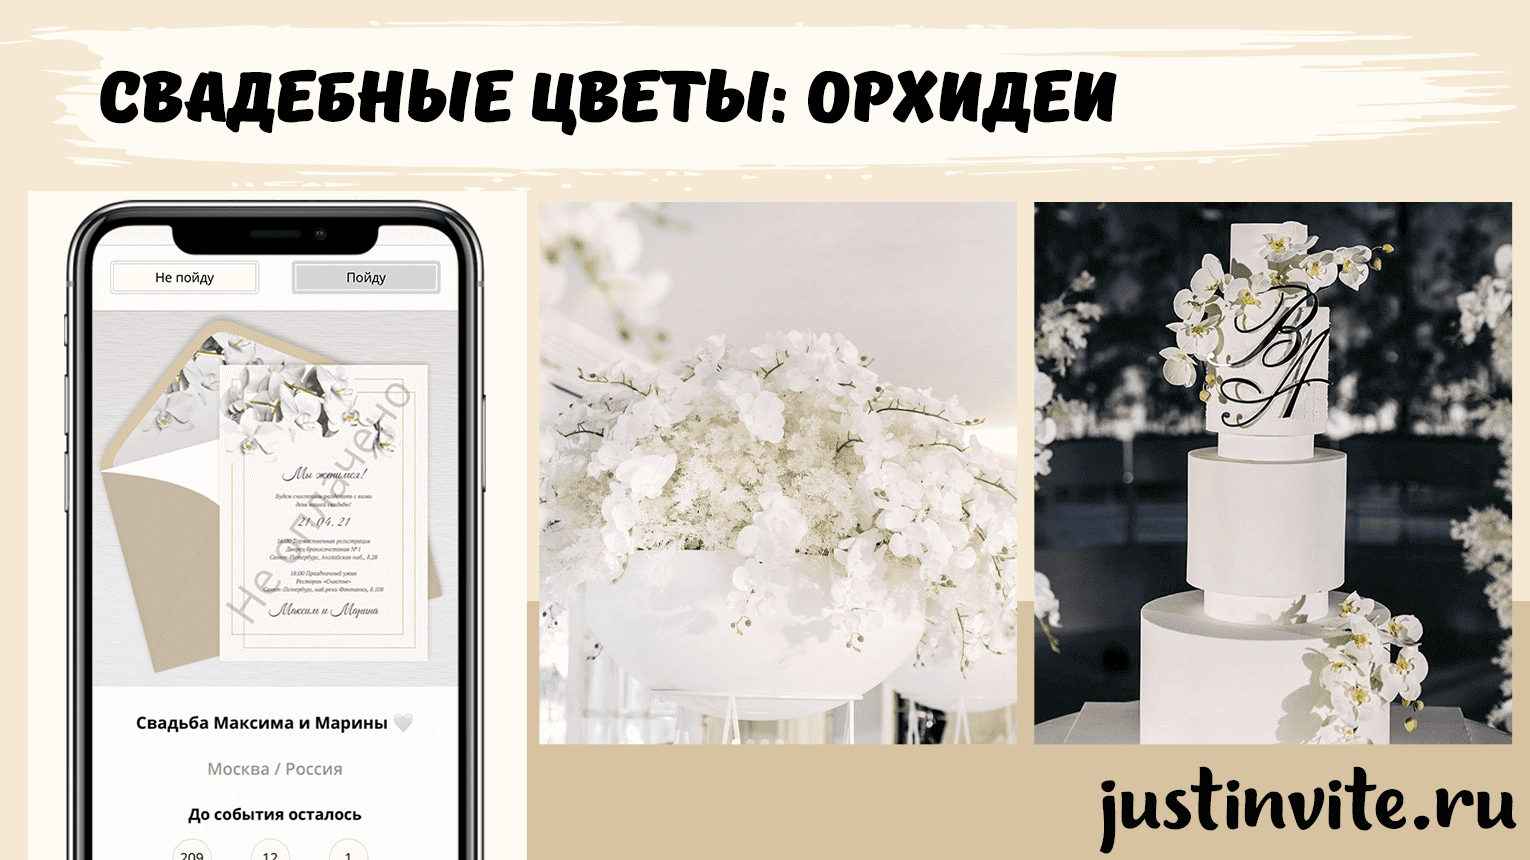 Стильные свадебные цветы: Орхидеи для свадьбы